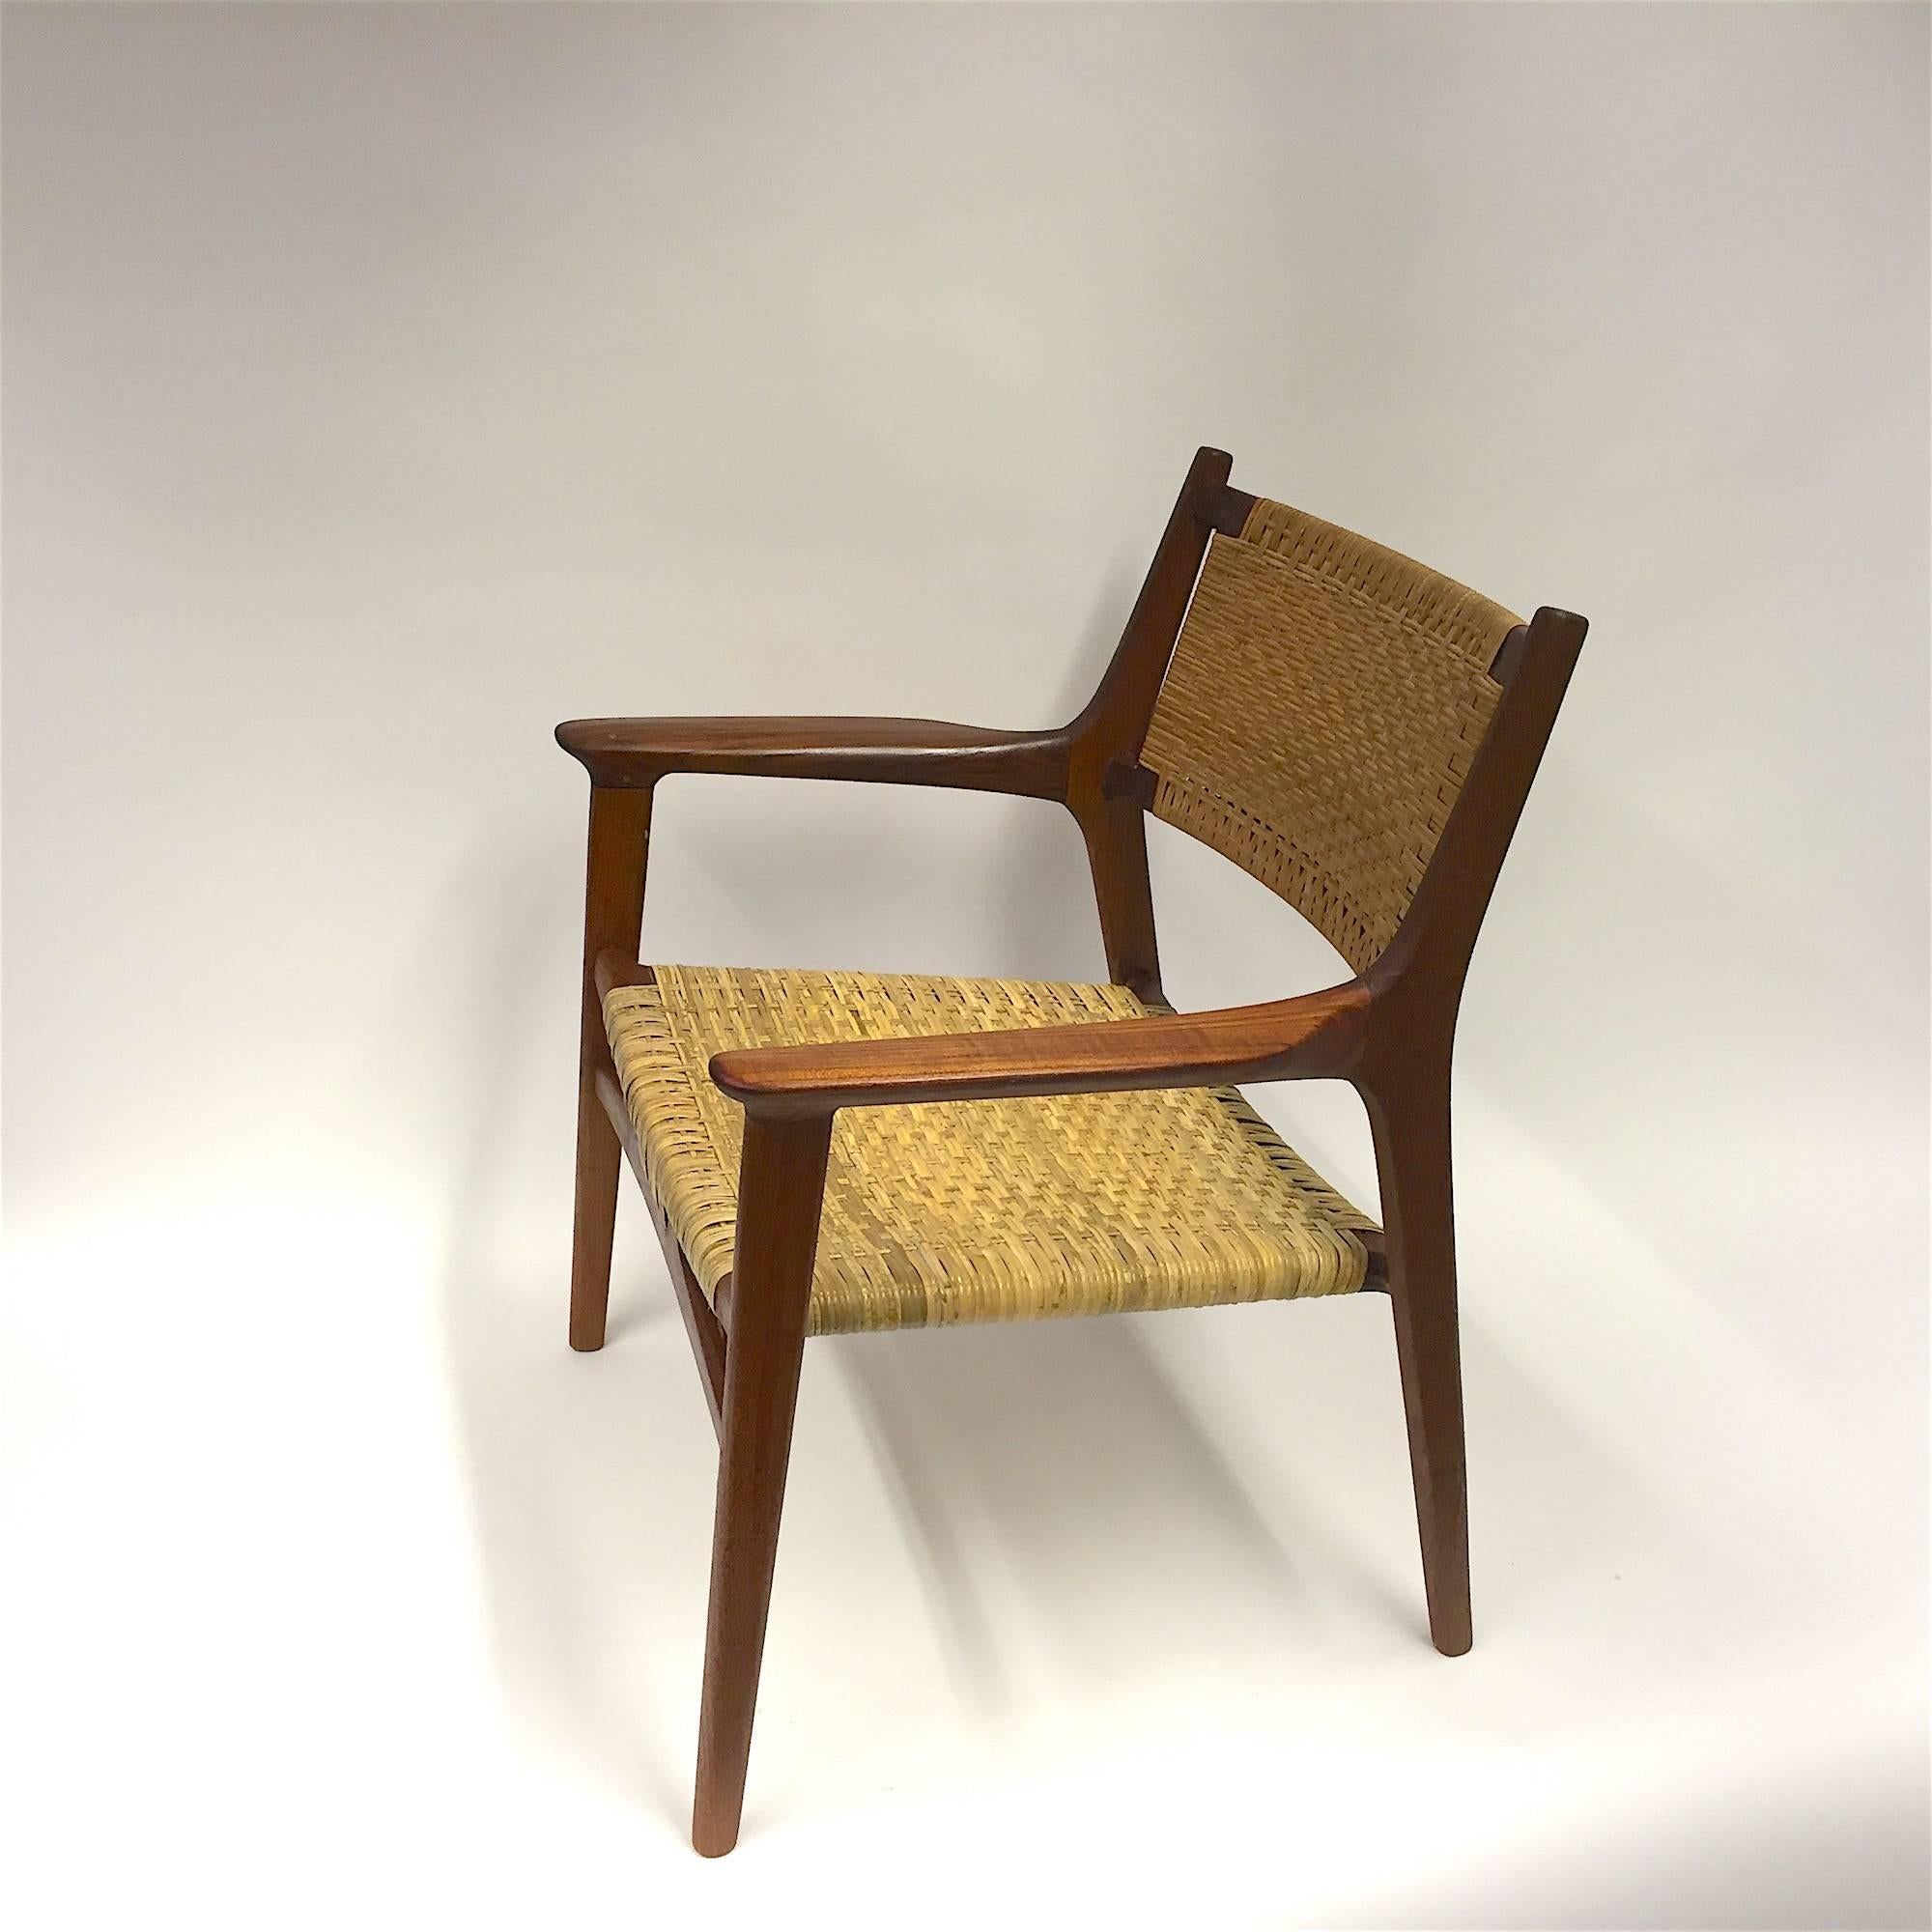 Mid-20th Century Hans J. Wegner for Johannes Hansen JH-516 Teak Cane Easy Chair, 1951